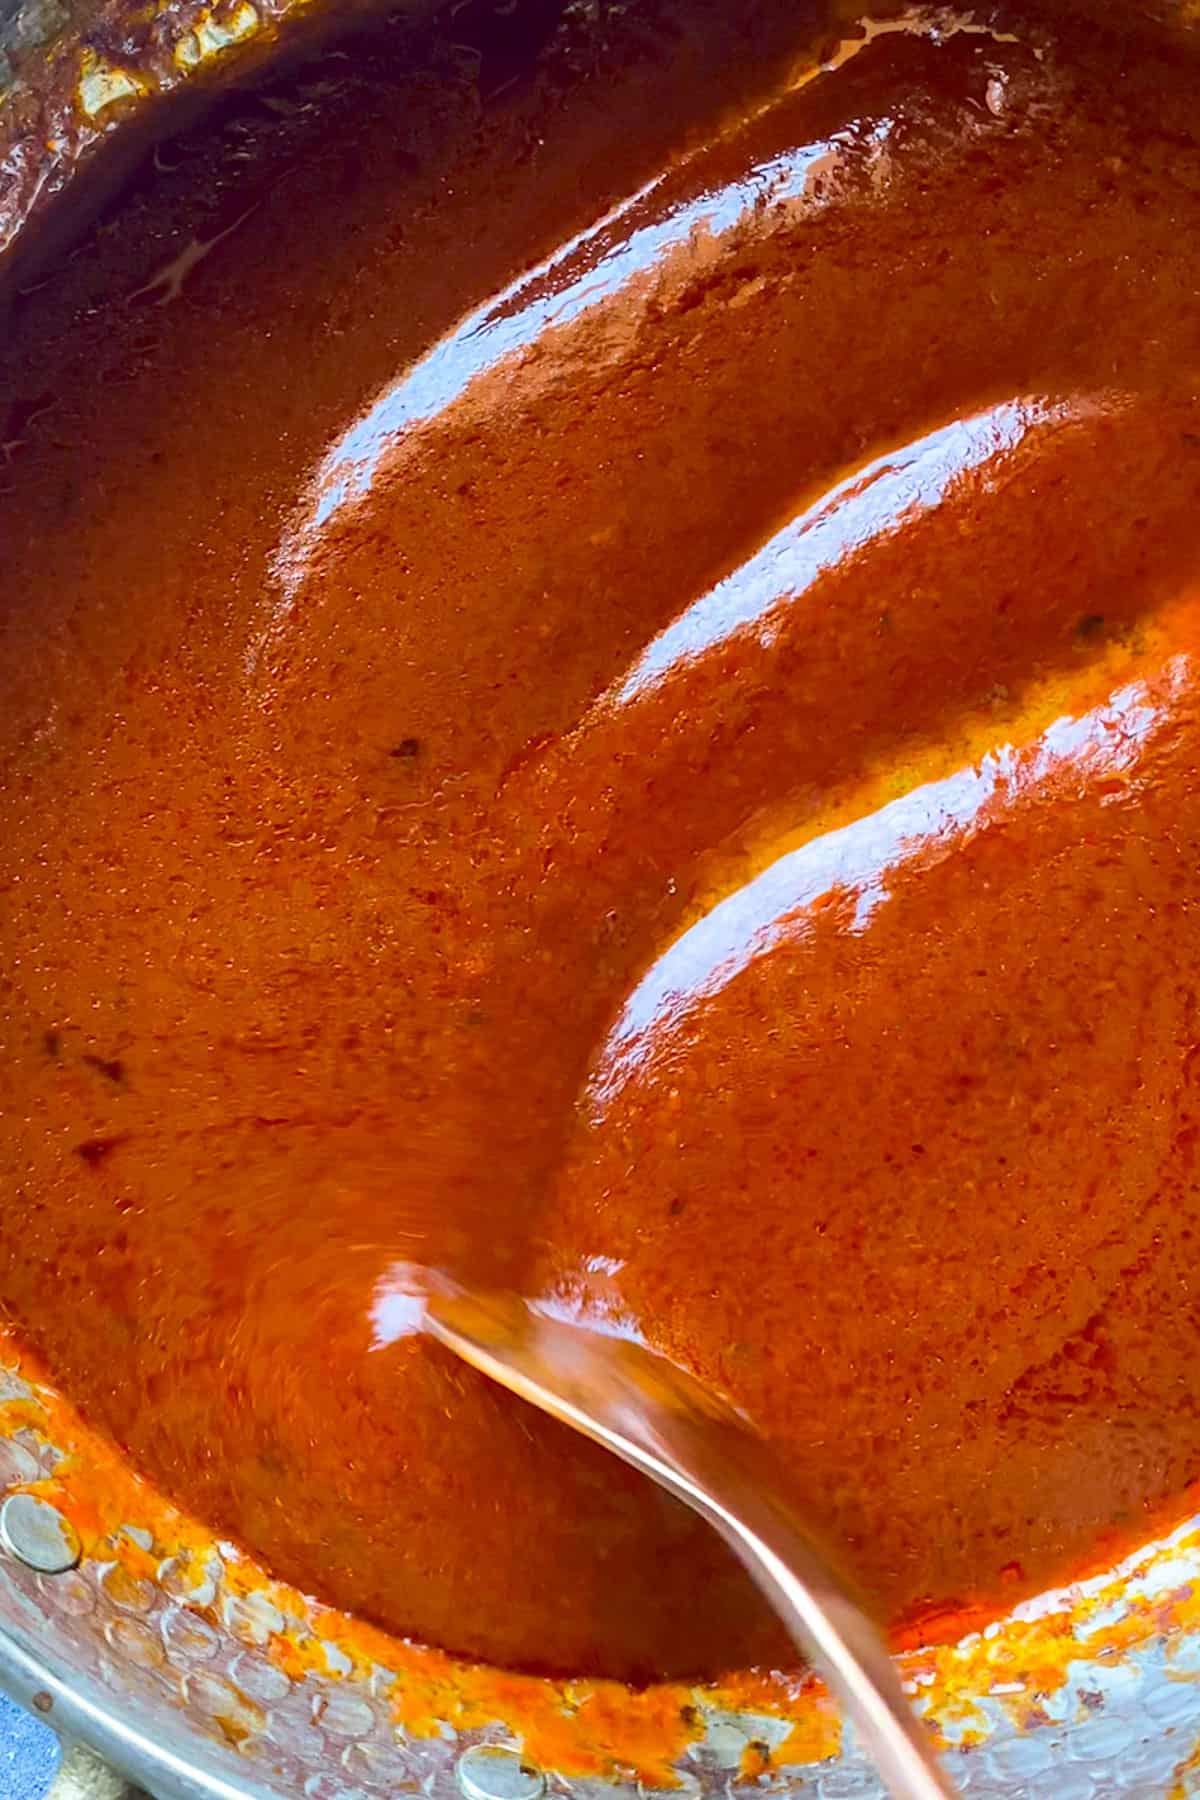 tomato paste pasta sauce in a decorative Turkish copper pot